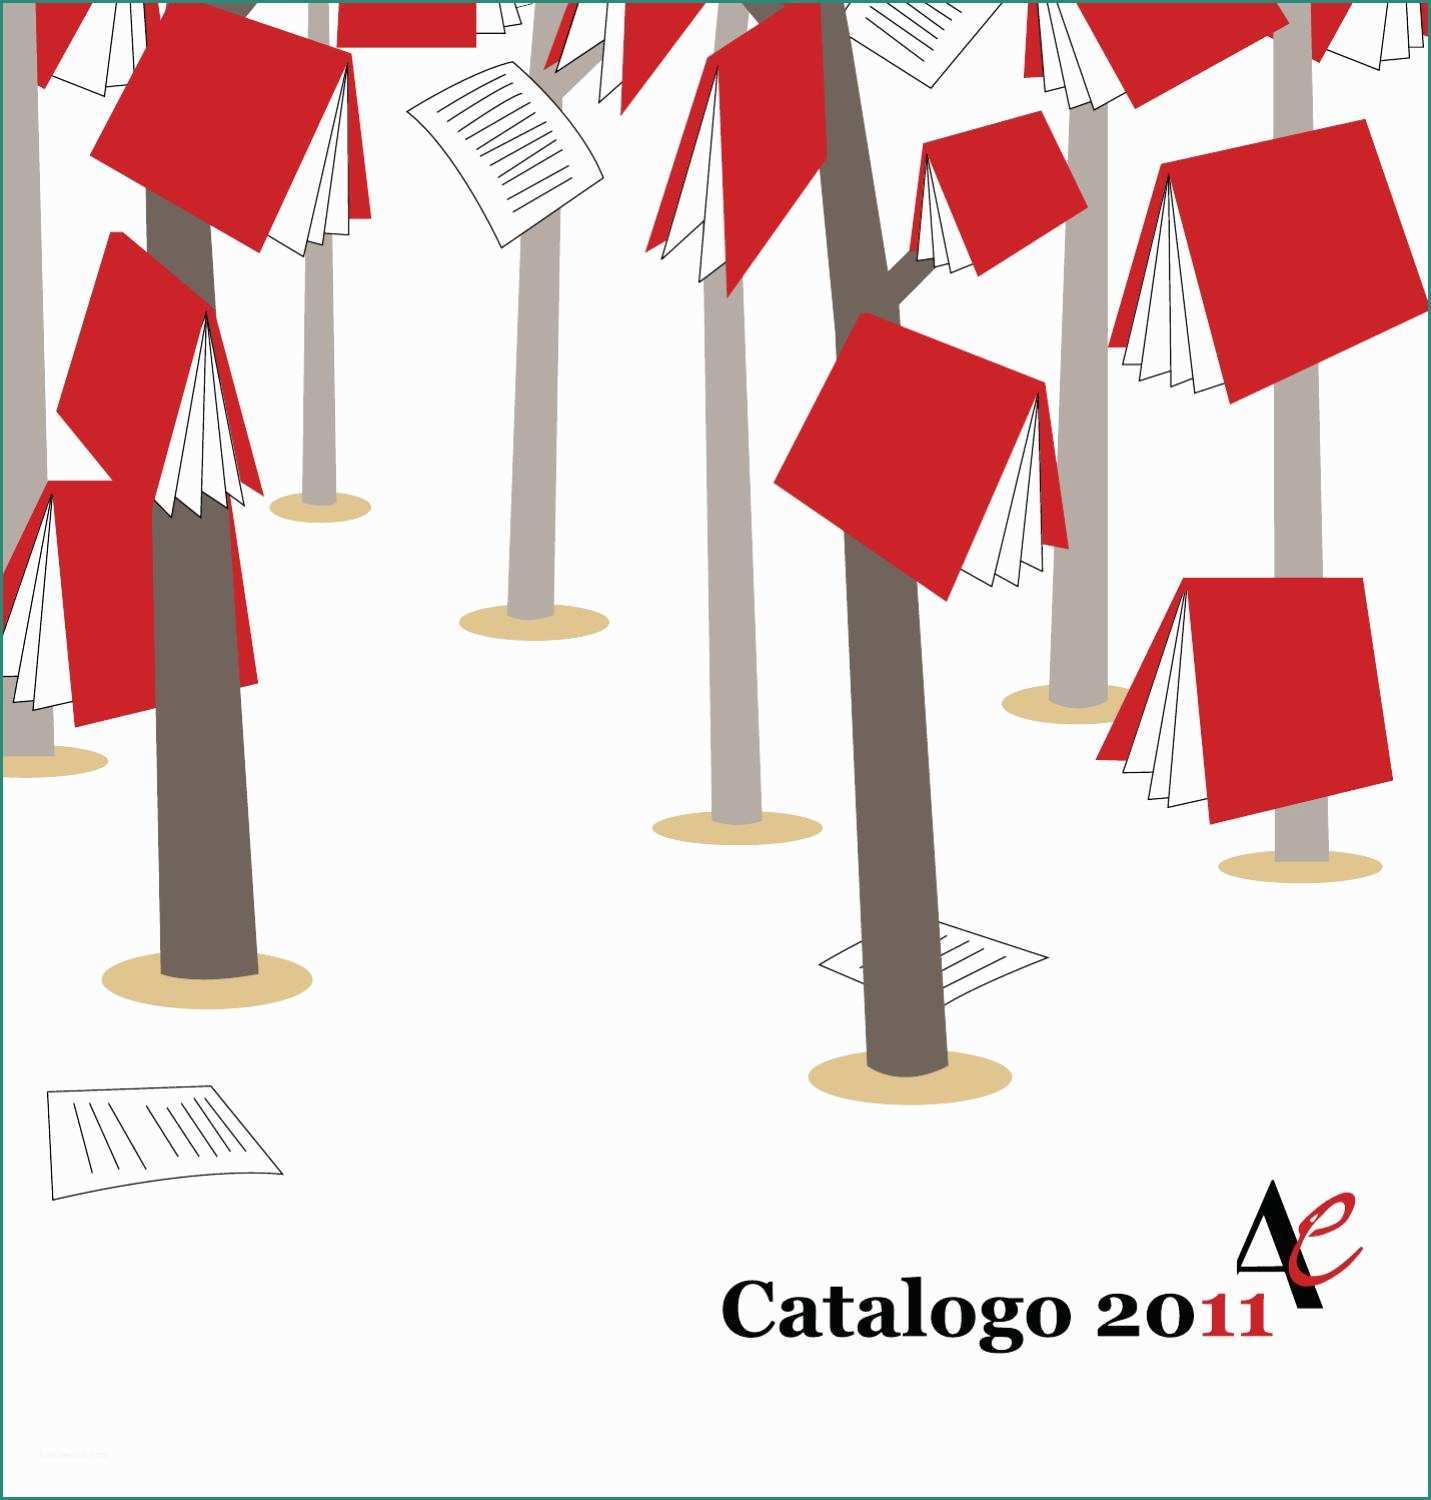 Cattura Polvere Elettrico E Catalogo 2011 Aliberti by Aliberti Editore issuu